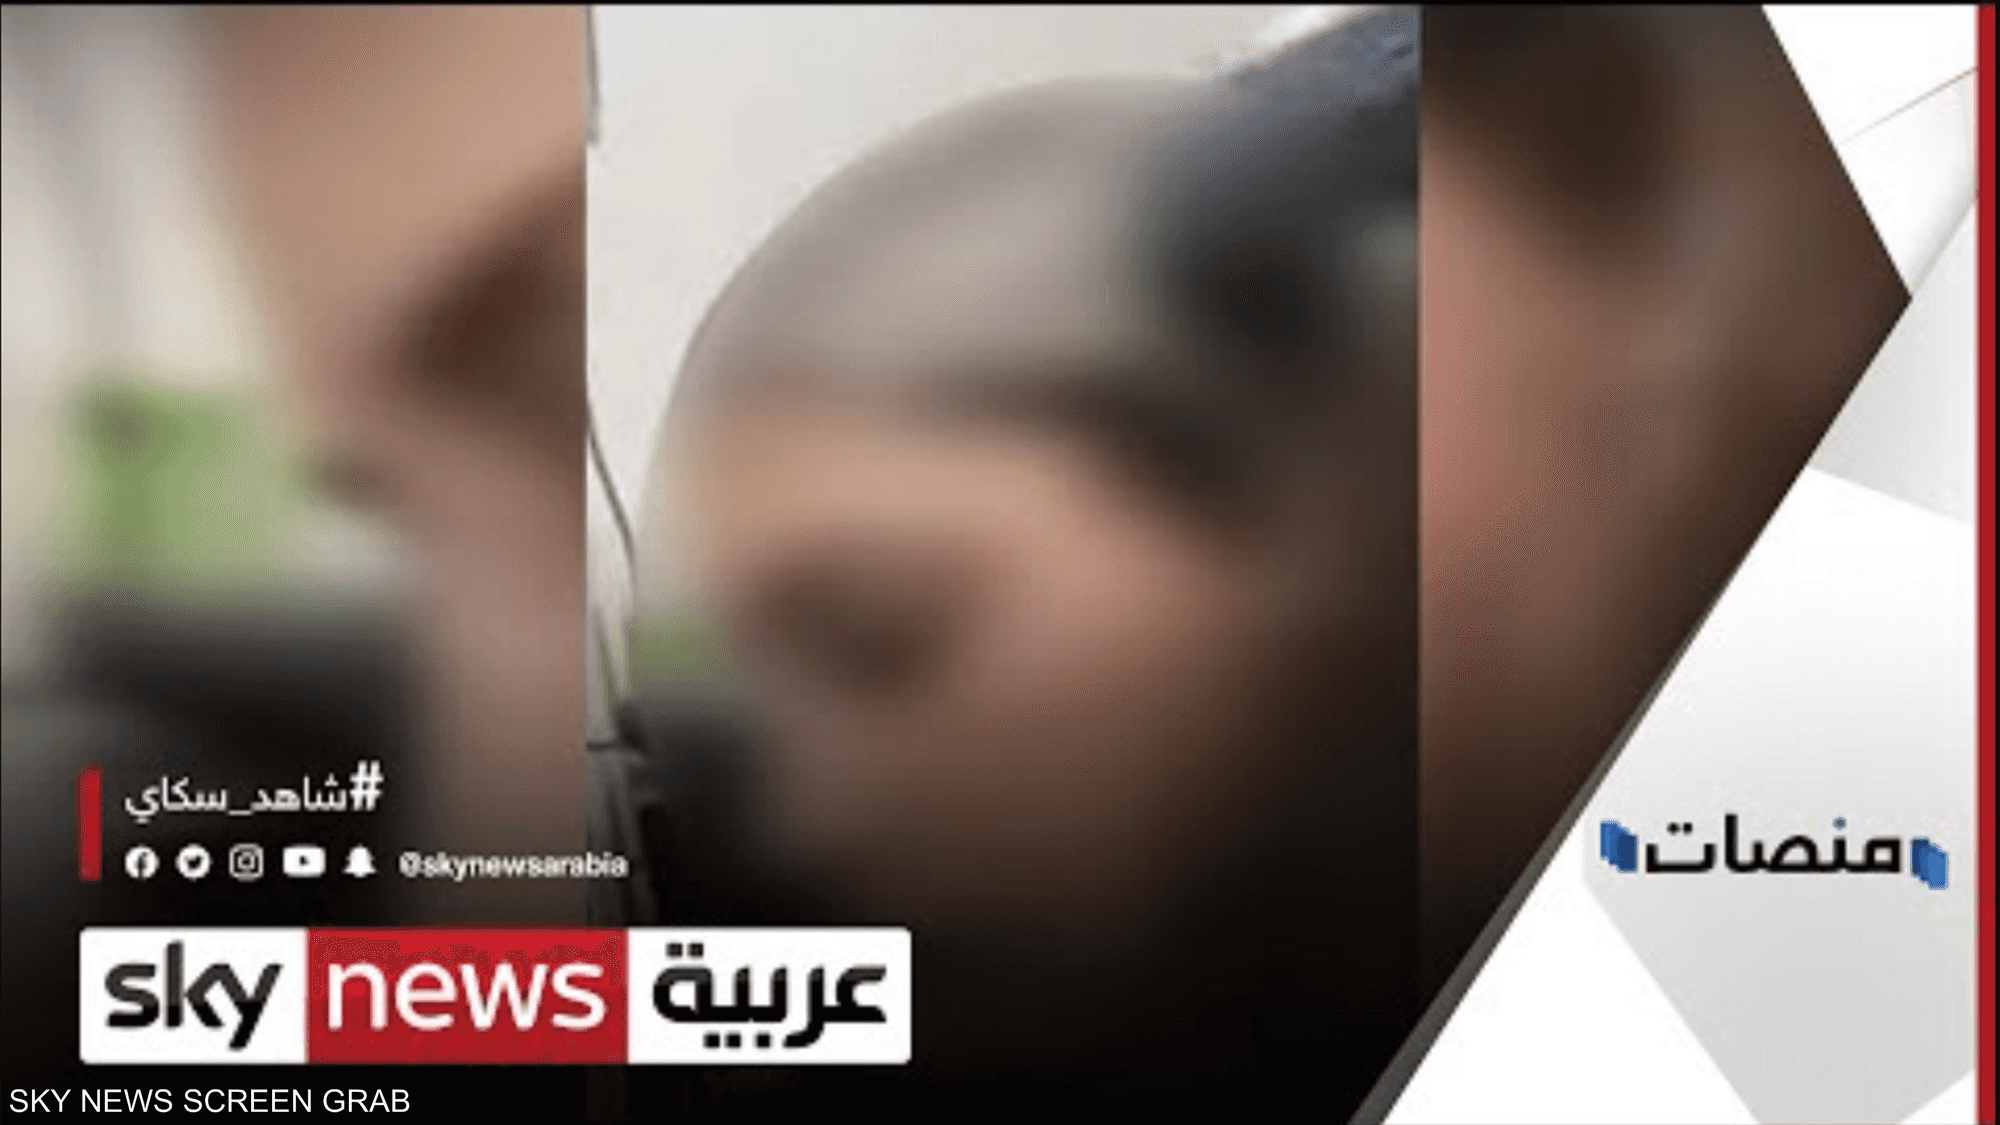 حقيقة اختطاف فتاة أردنية والاعتداء عليها في بنغازي